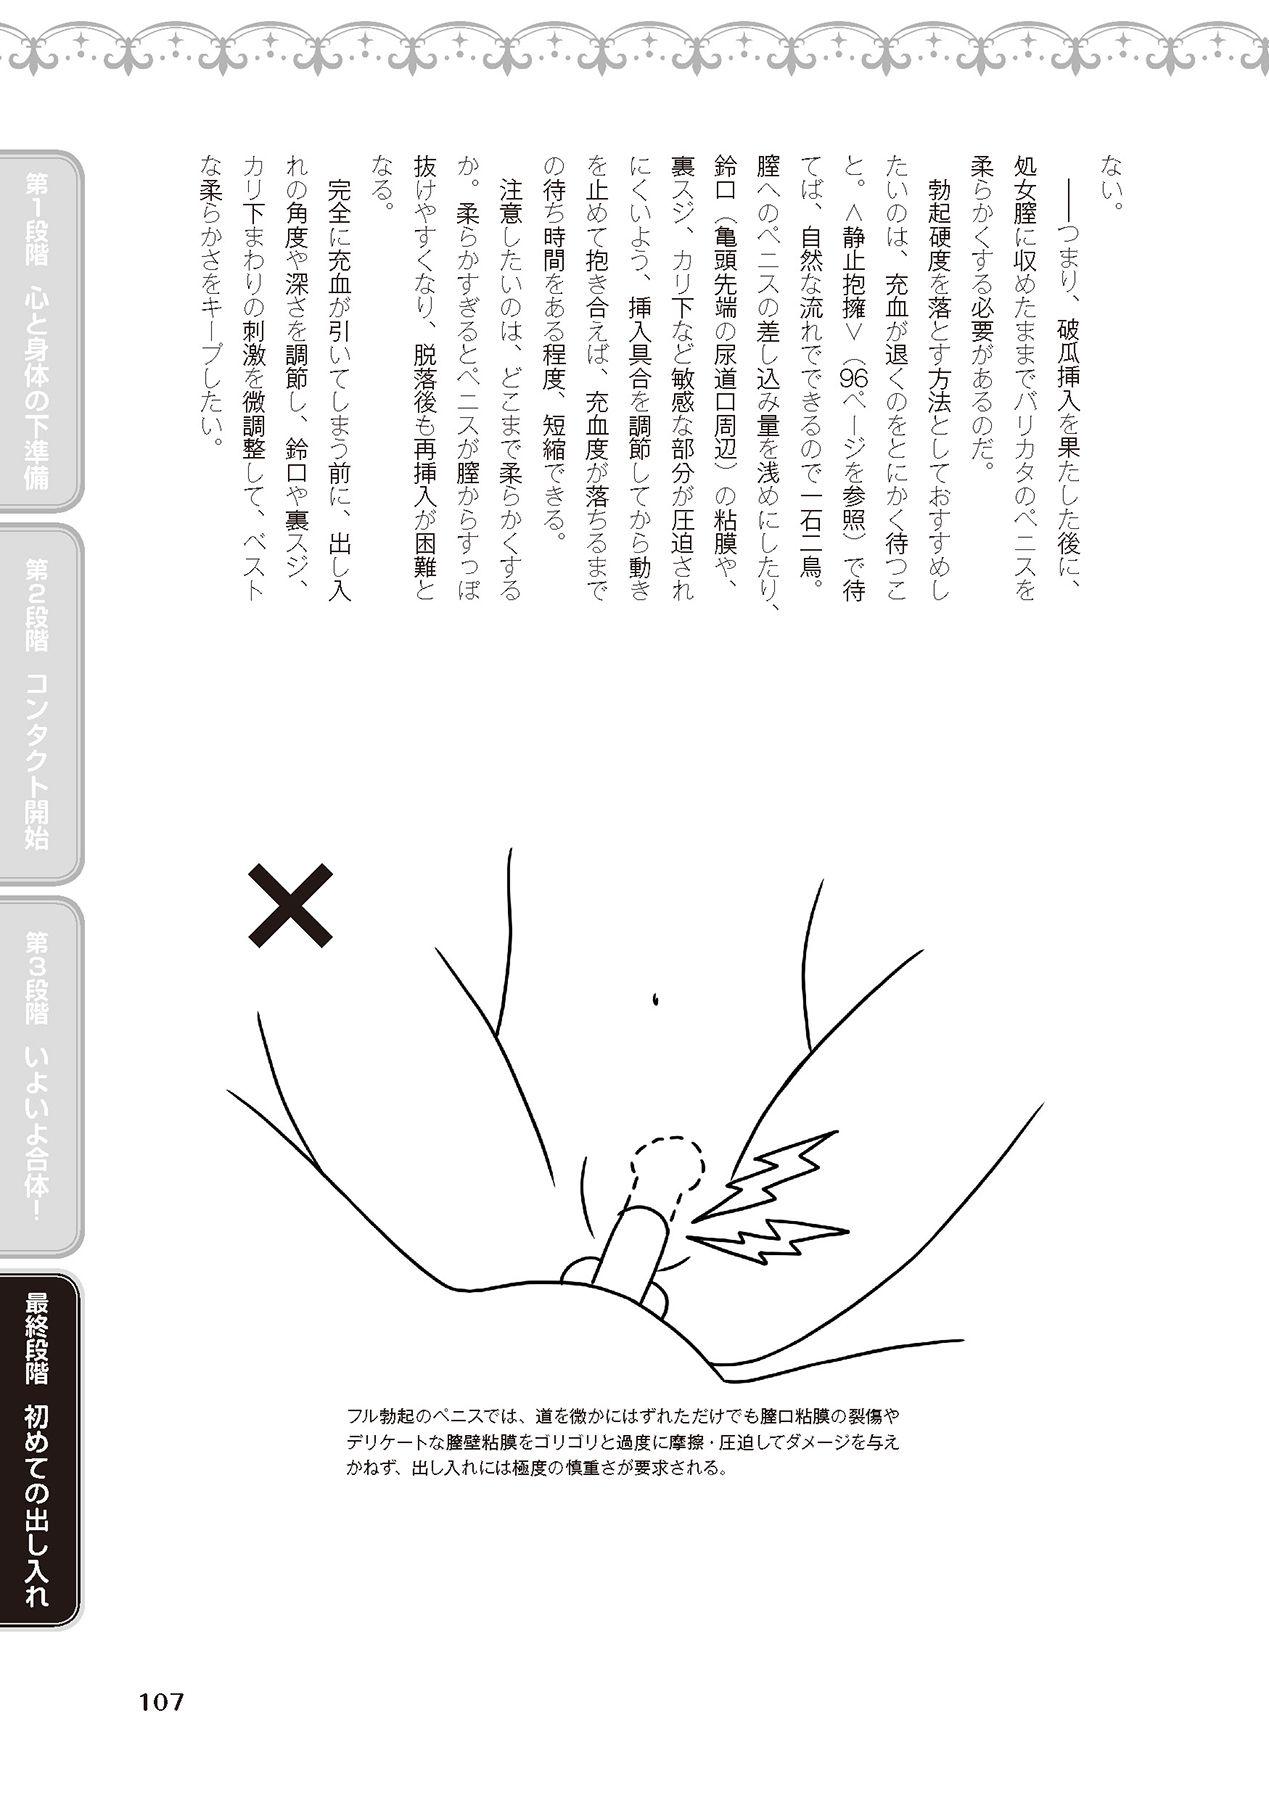 処女喪失・ロストヴァージンSEX完全マニュアル イラスト版……初エッチ 108